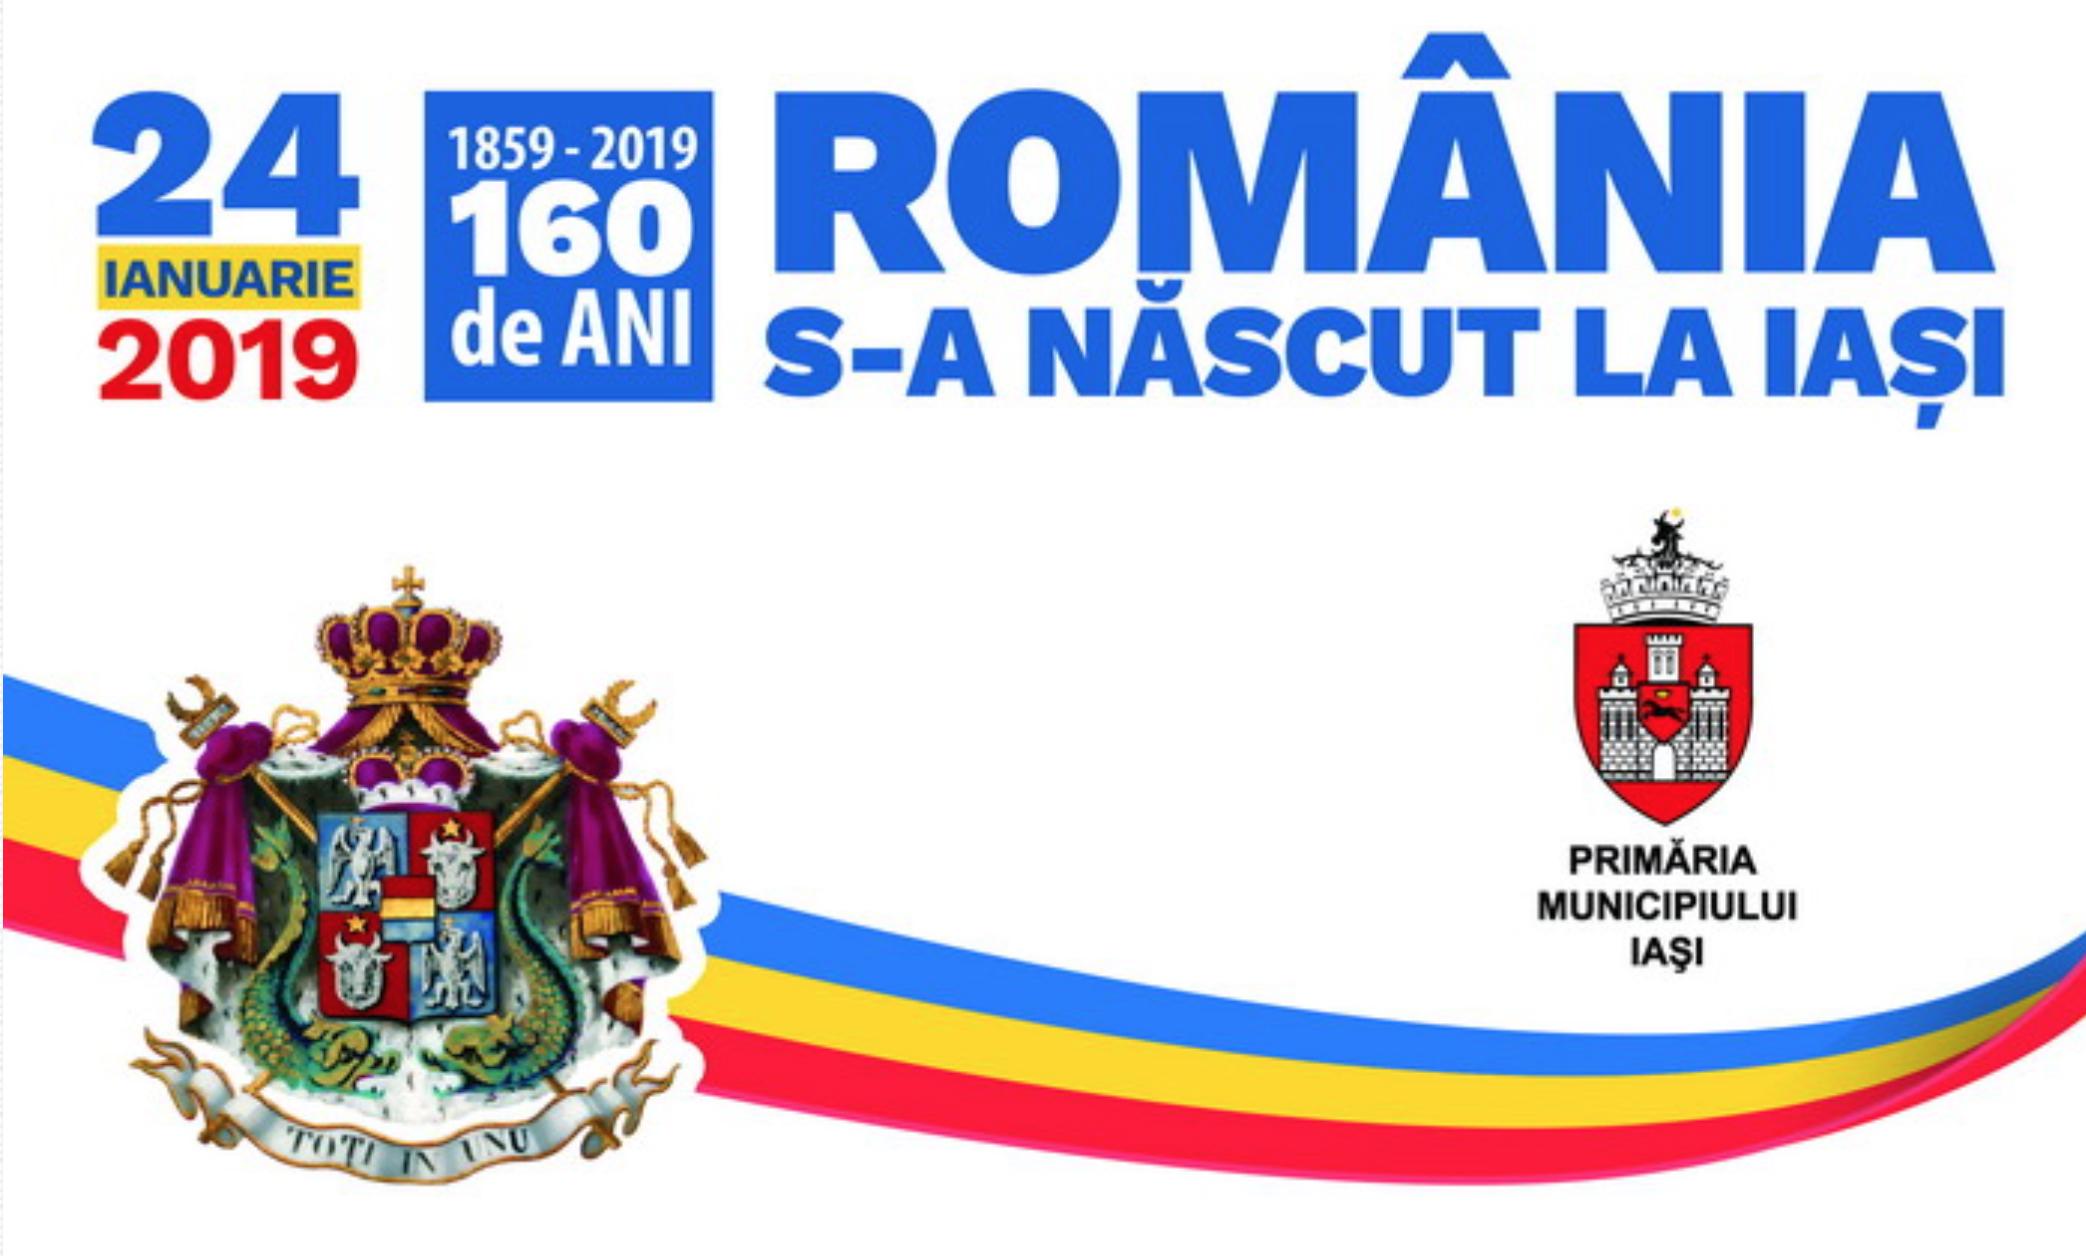 Unirea Principatelor Române. Care e Programul Evenimentelor de la Iași pe 24 ianuarie